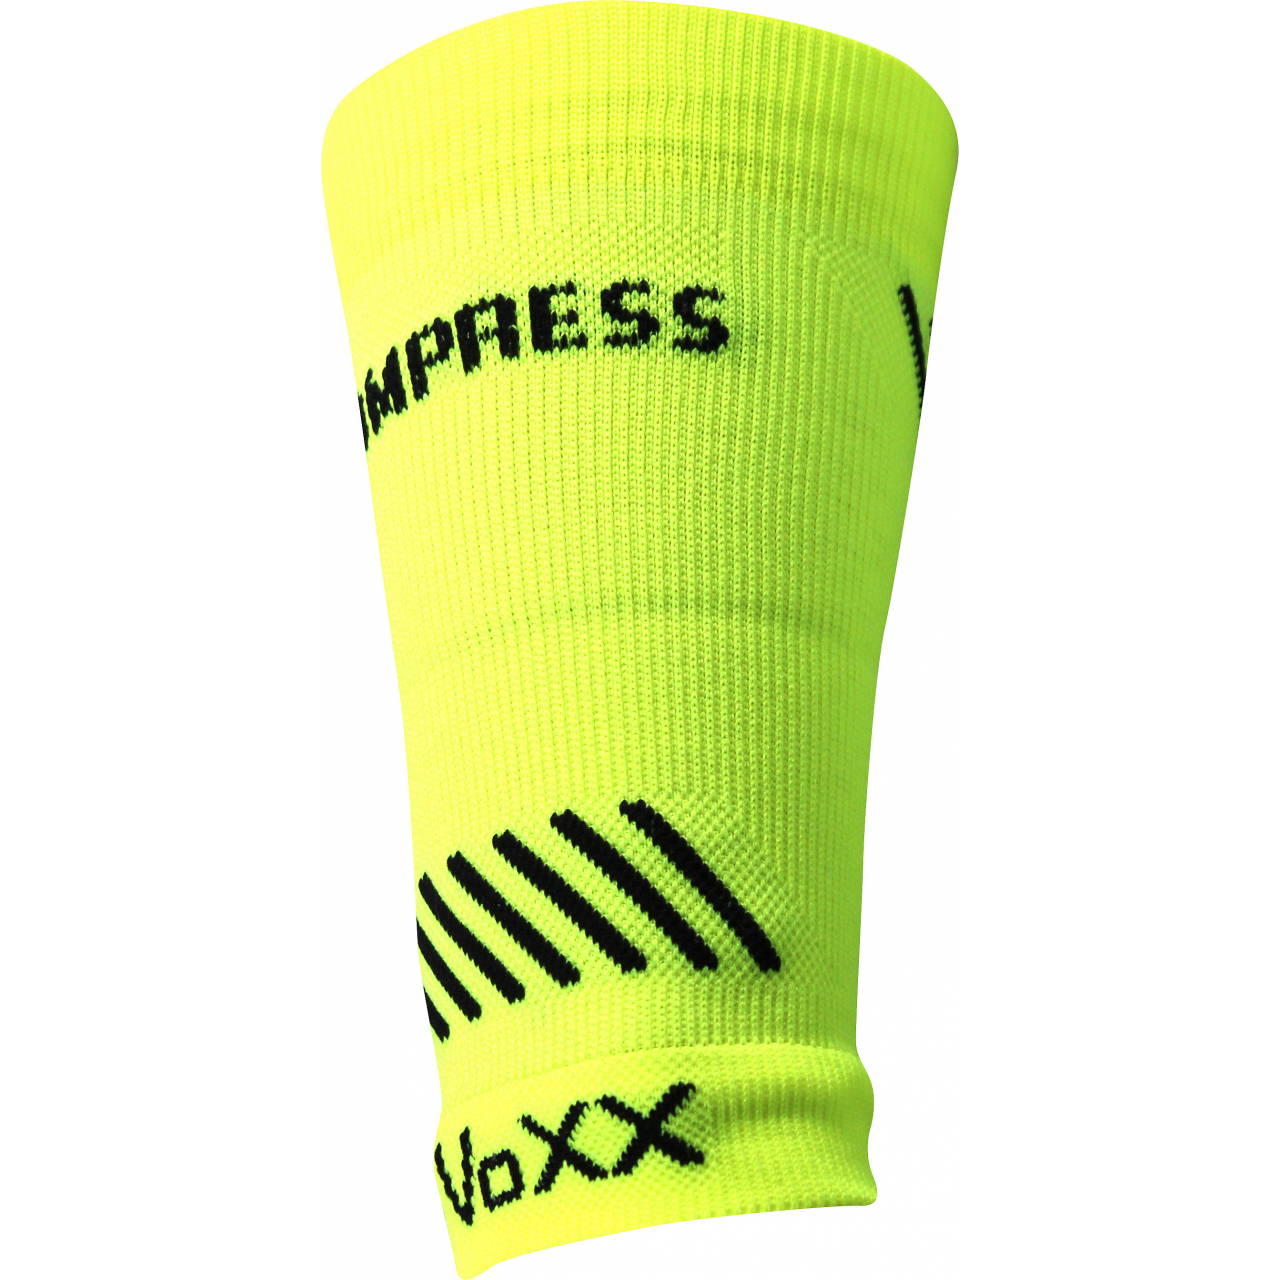 Návlek kompresní Voxx Protect zápěstí - žlutý svítící, L/XL